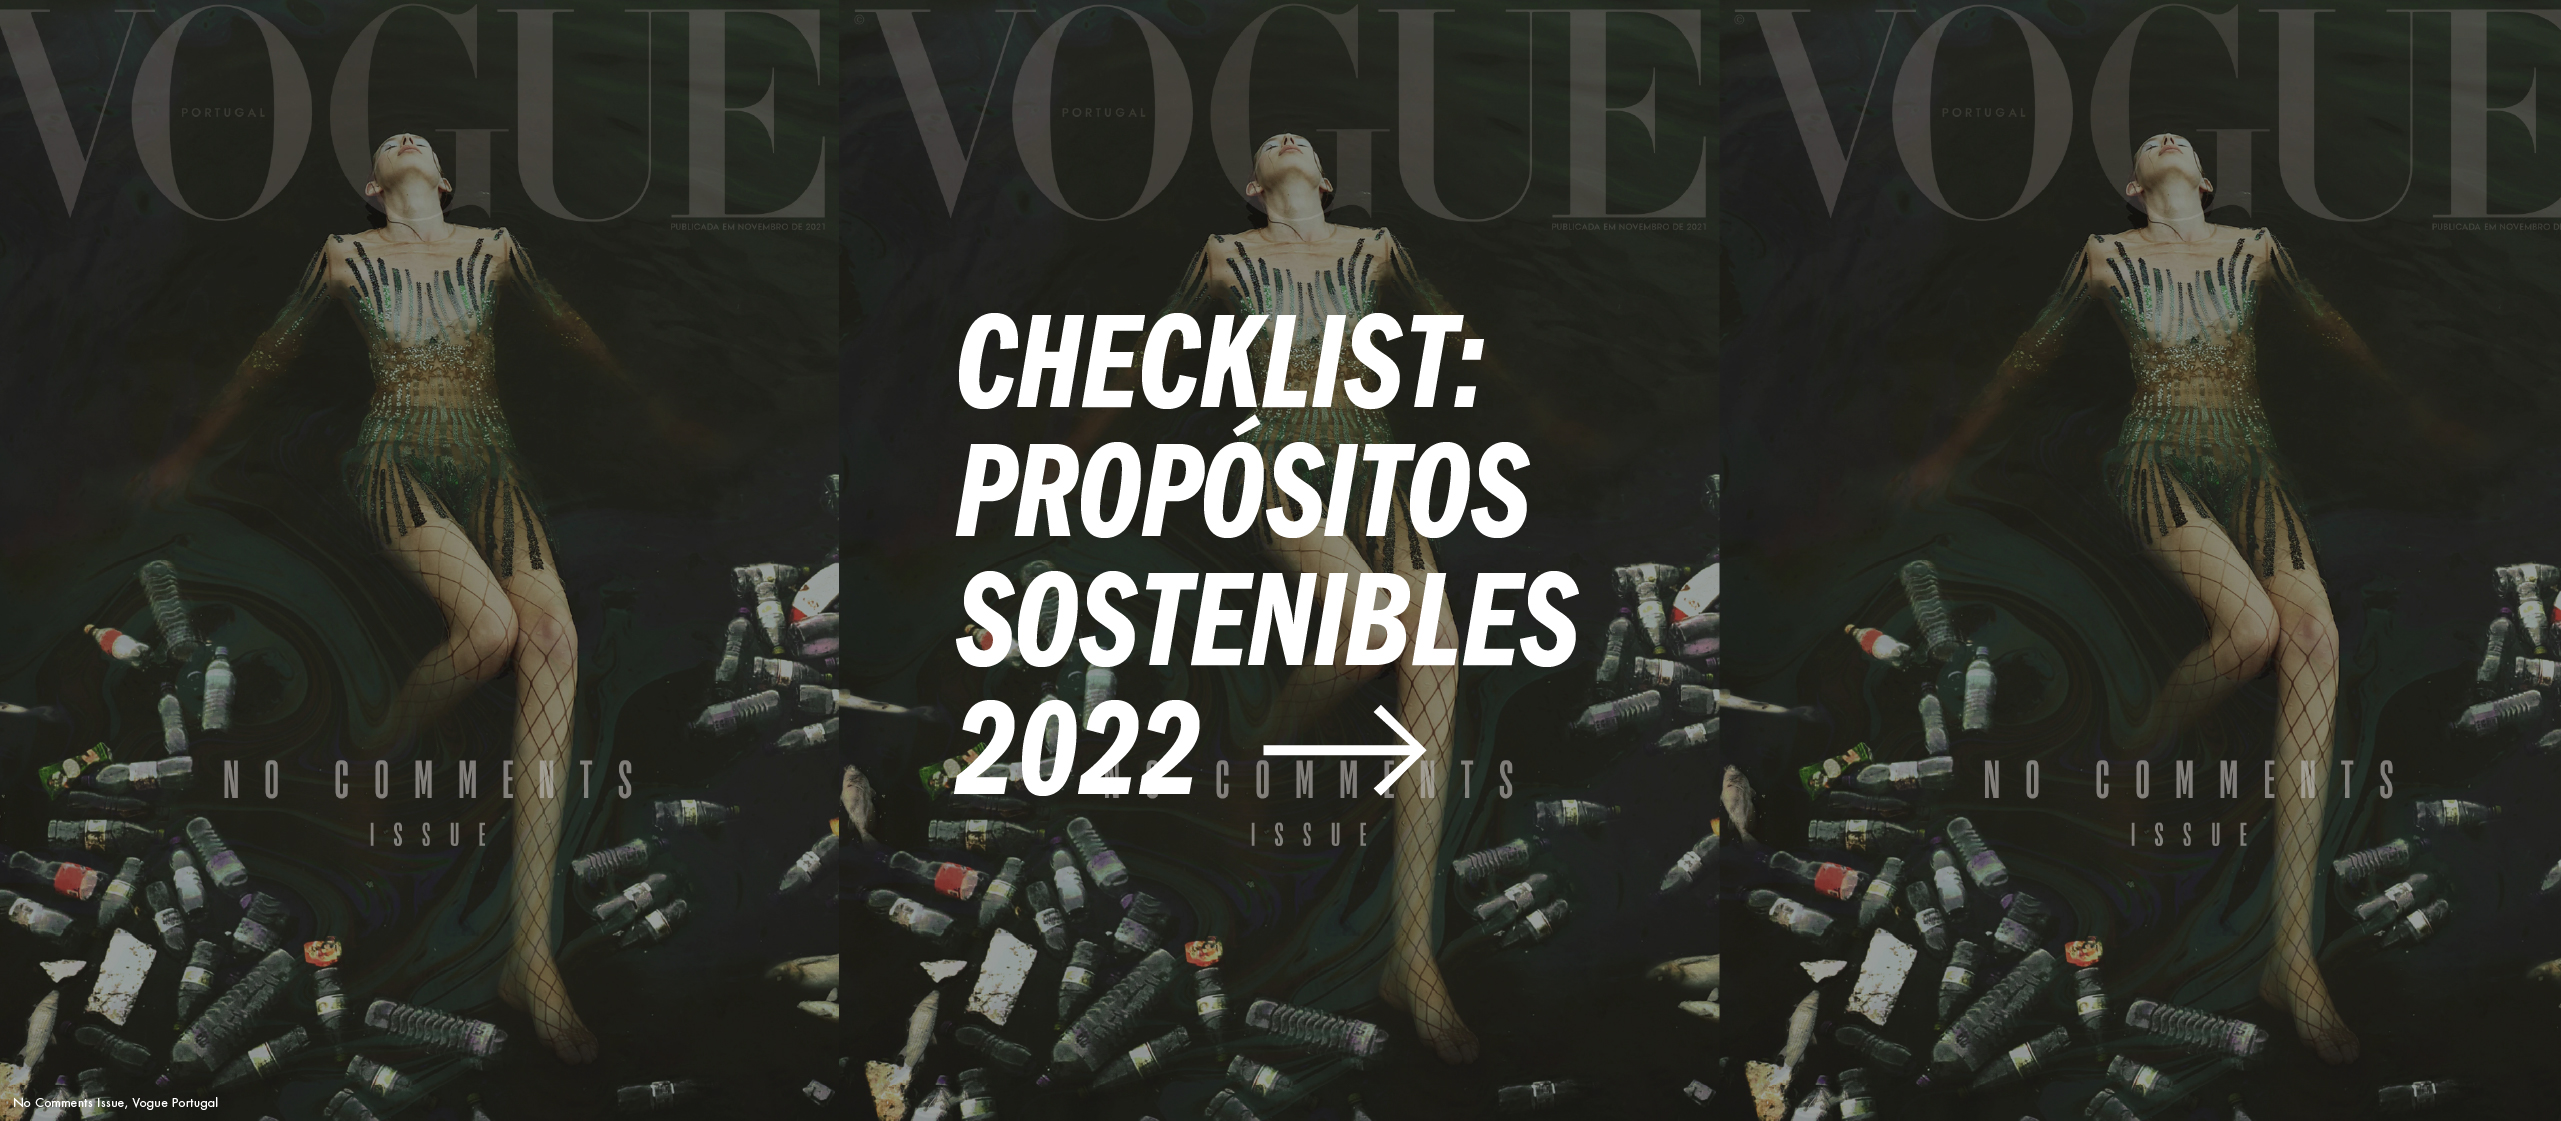 Checklist: Propósitos de moda sostenible para 2022